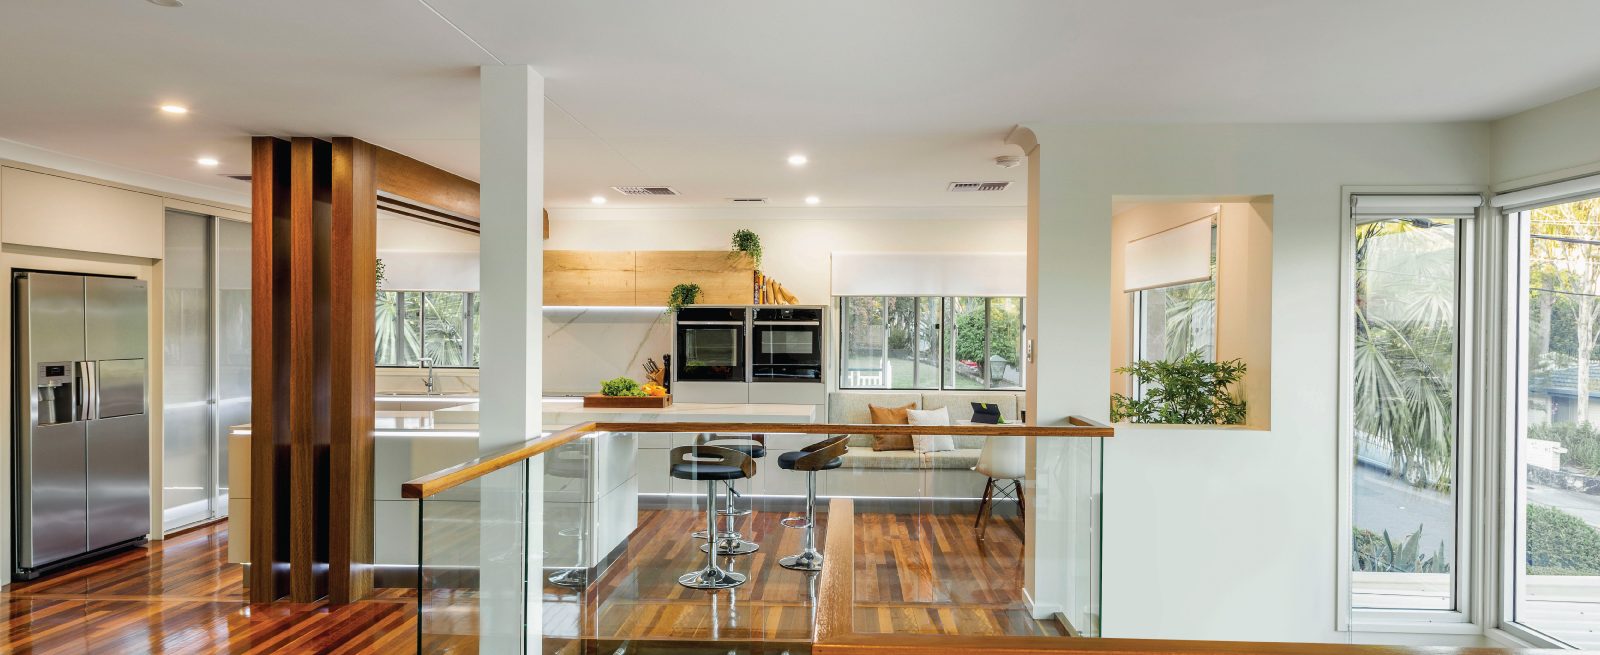 Luxury Kitchen Renovation Hamilton Brisbane | Kitchen Design Brisbane